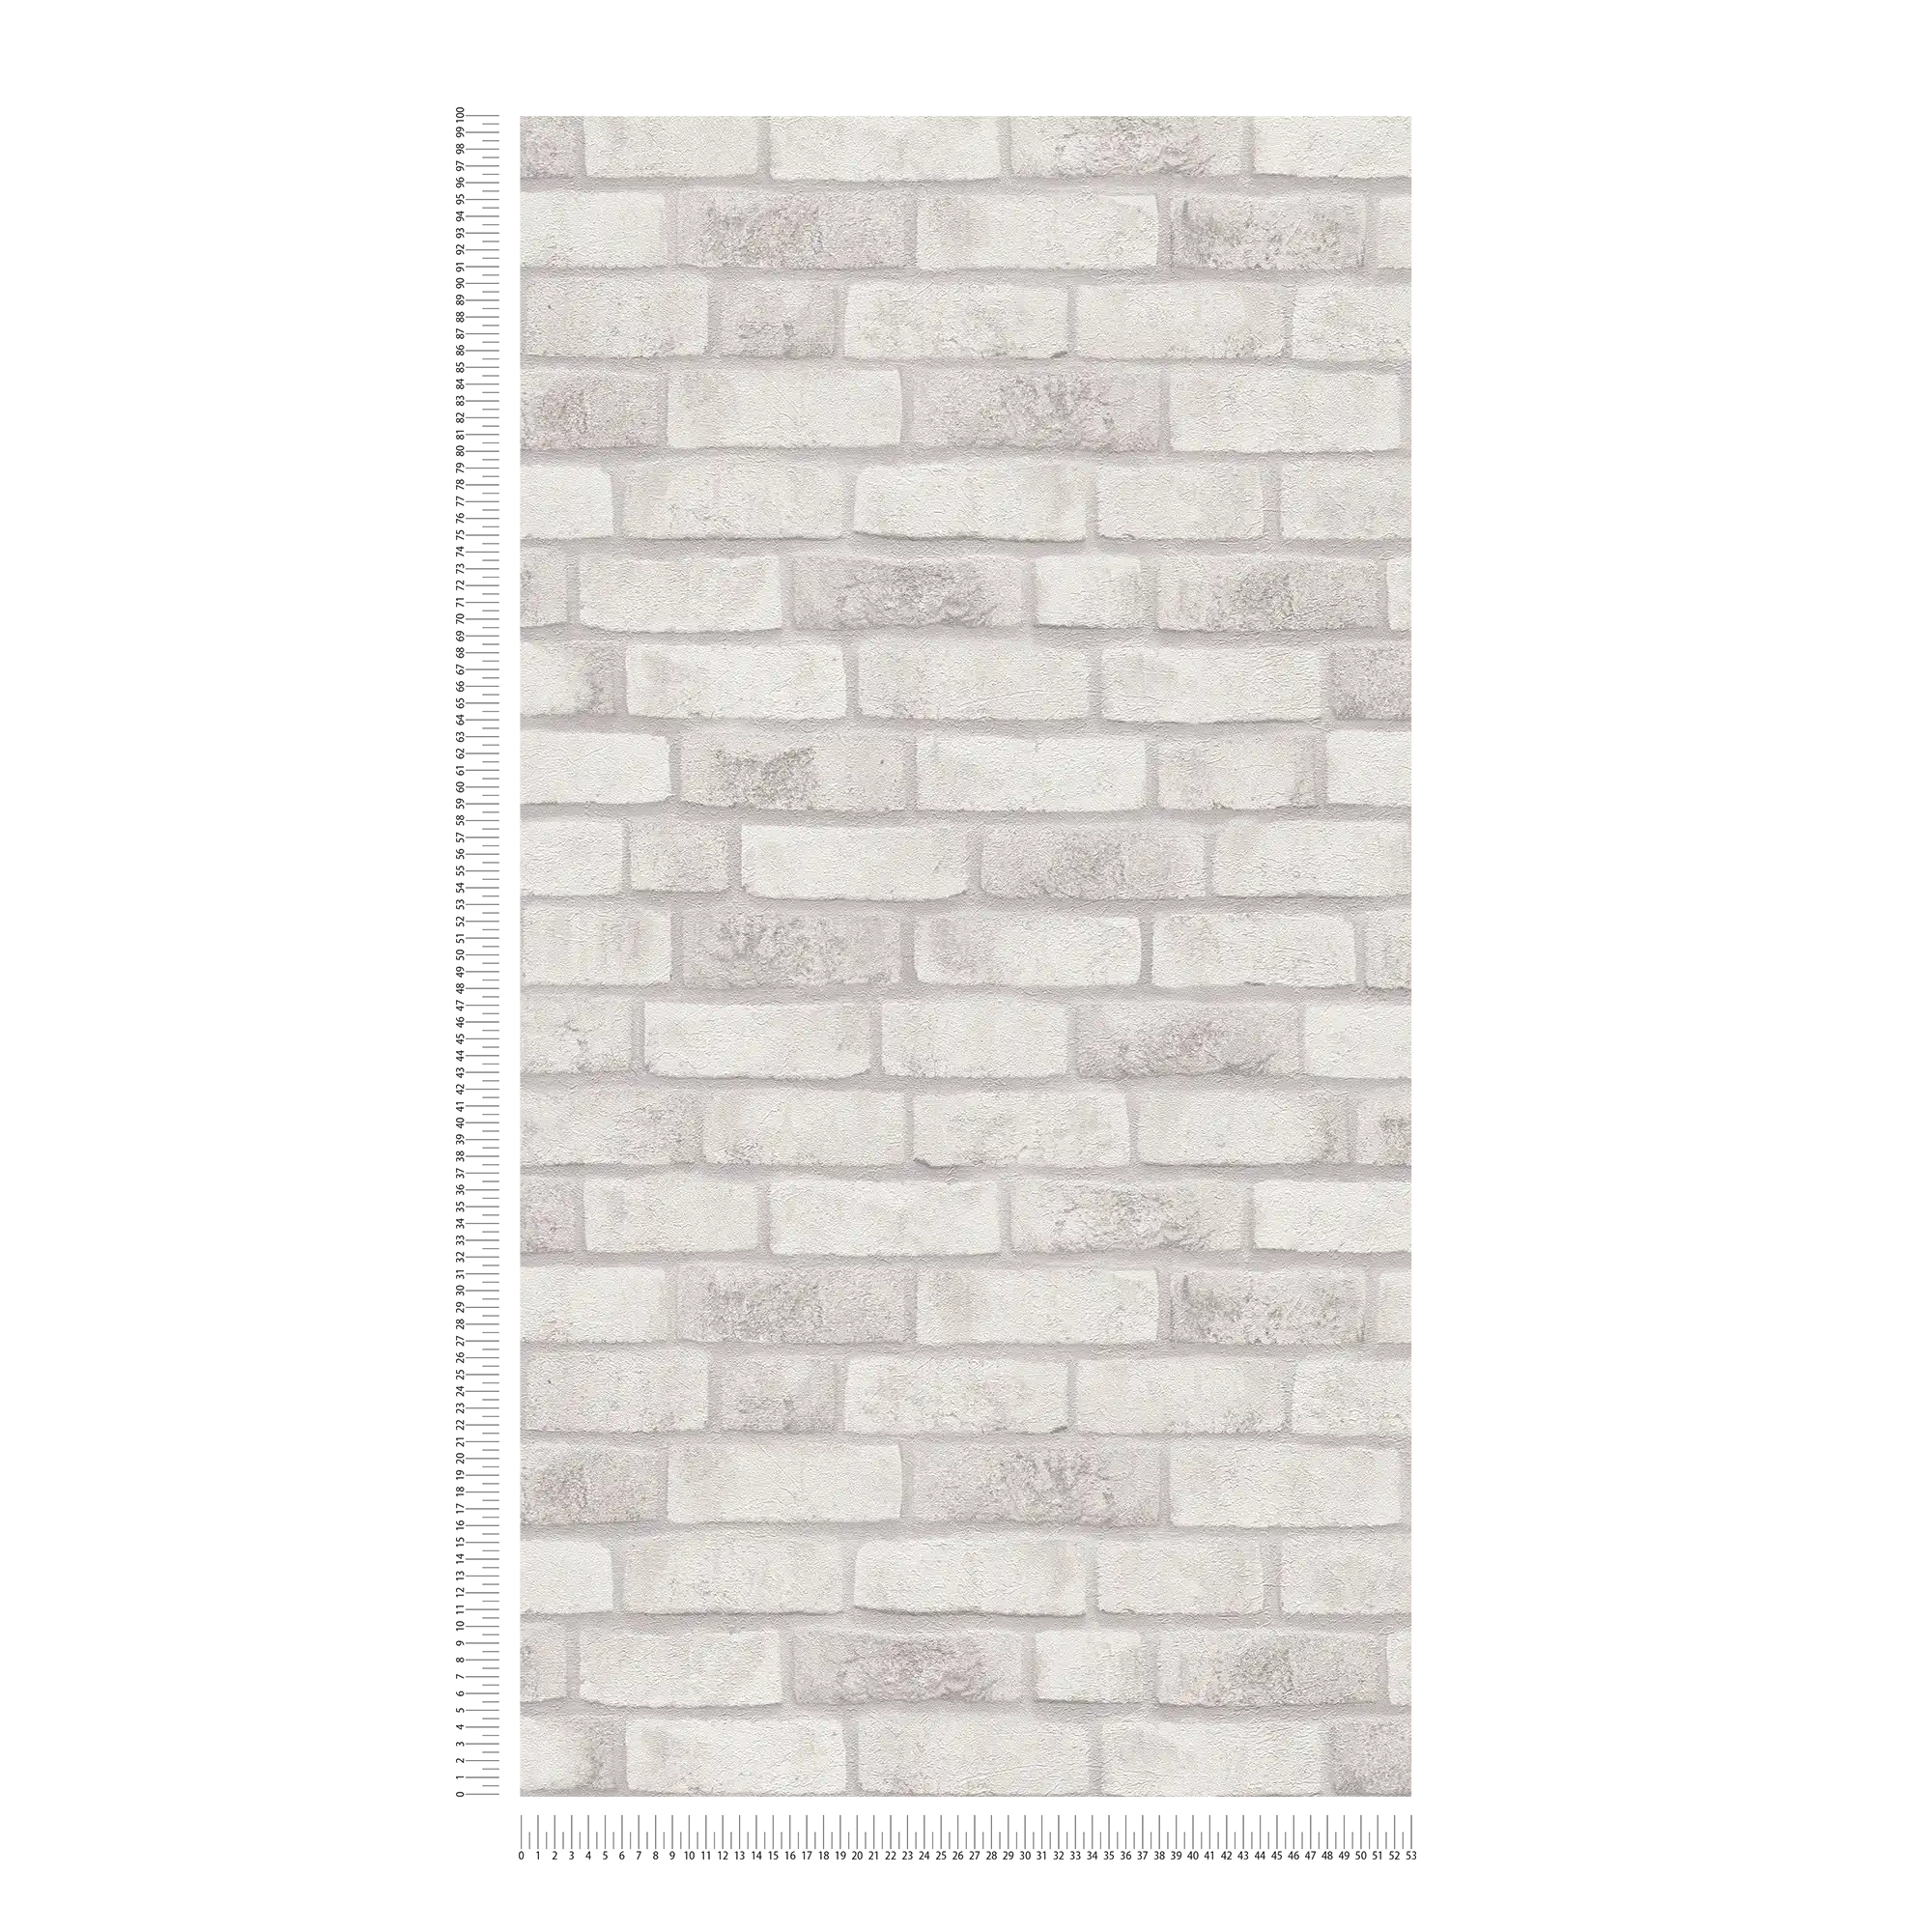             Carta da parati non tessuta con parete di mattoni - bianco, grigio, grigio
        